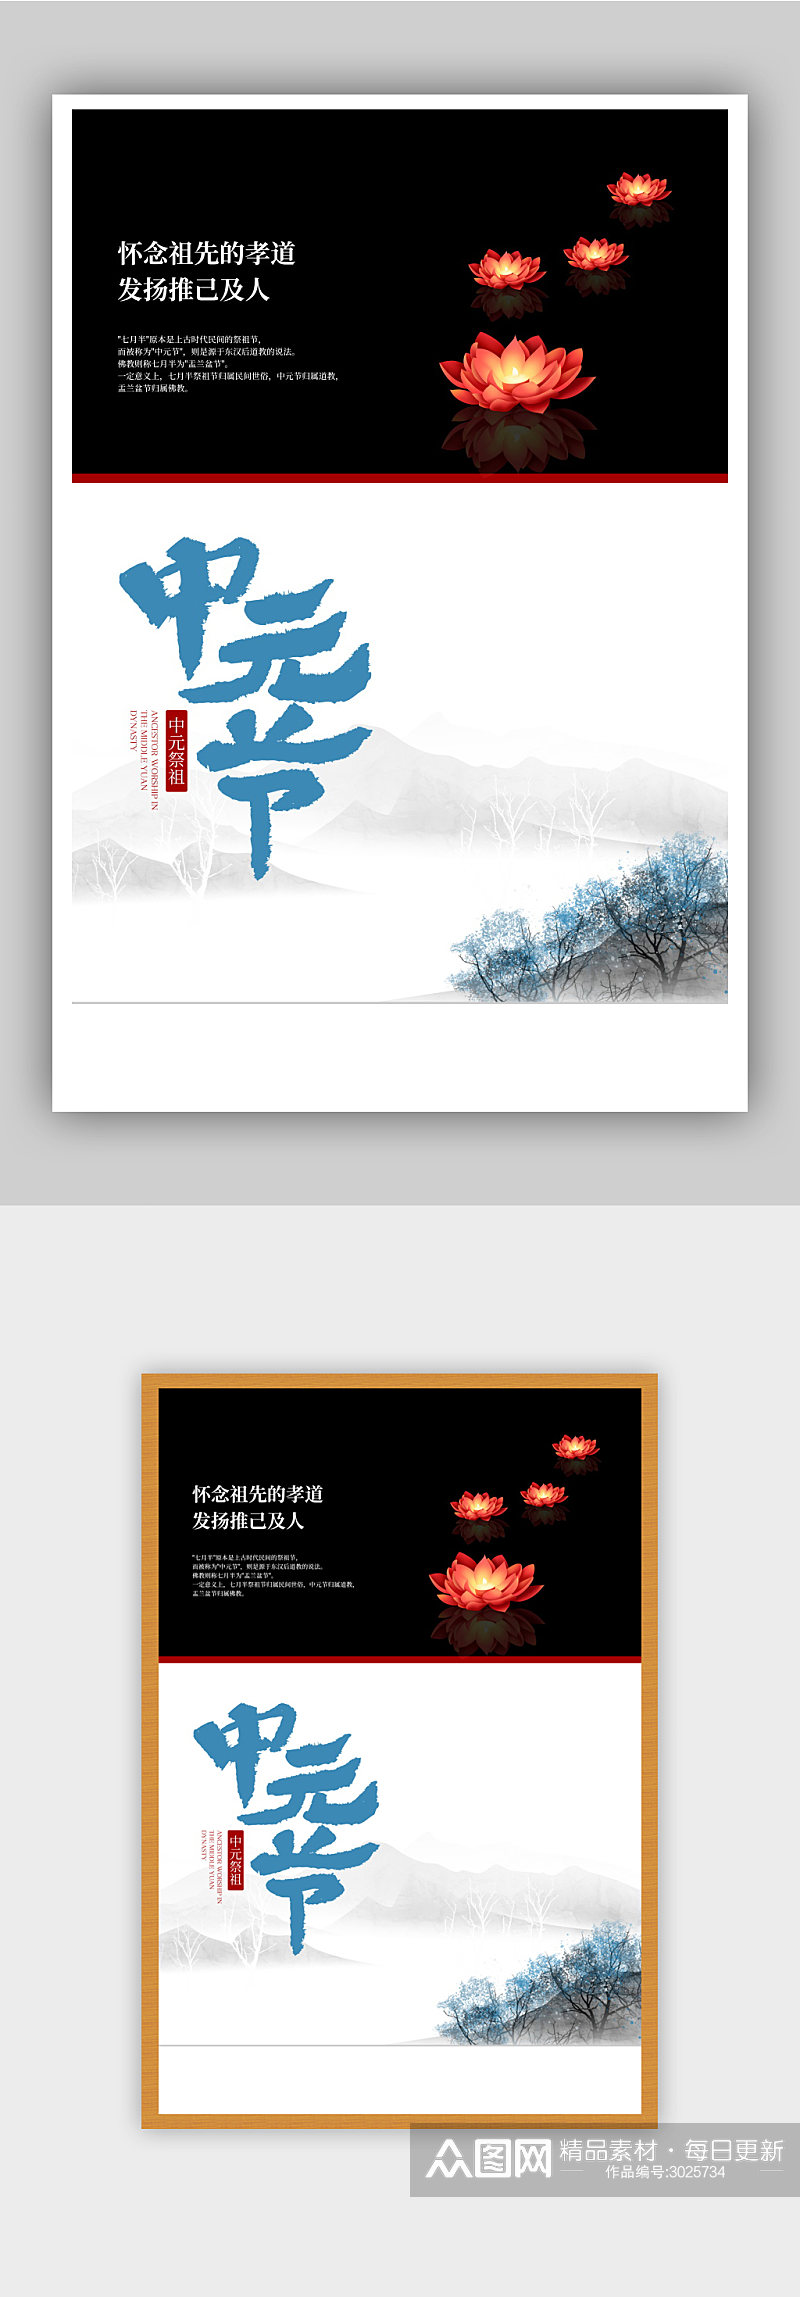 中国风中元节宣传海报设计素材